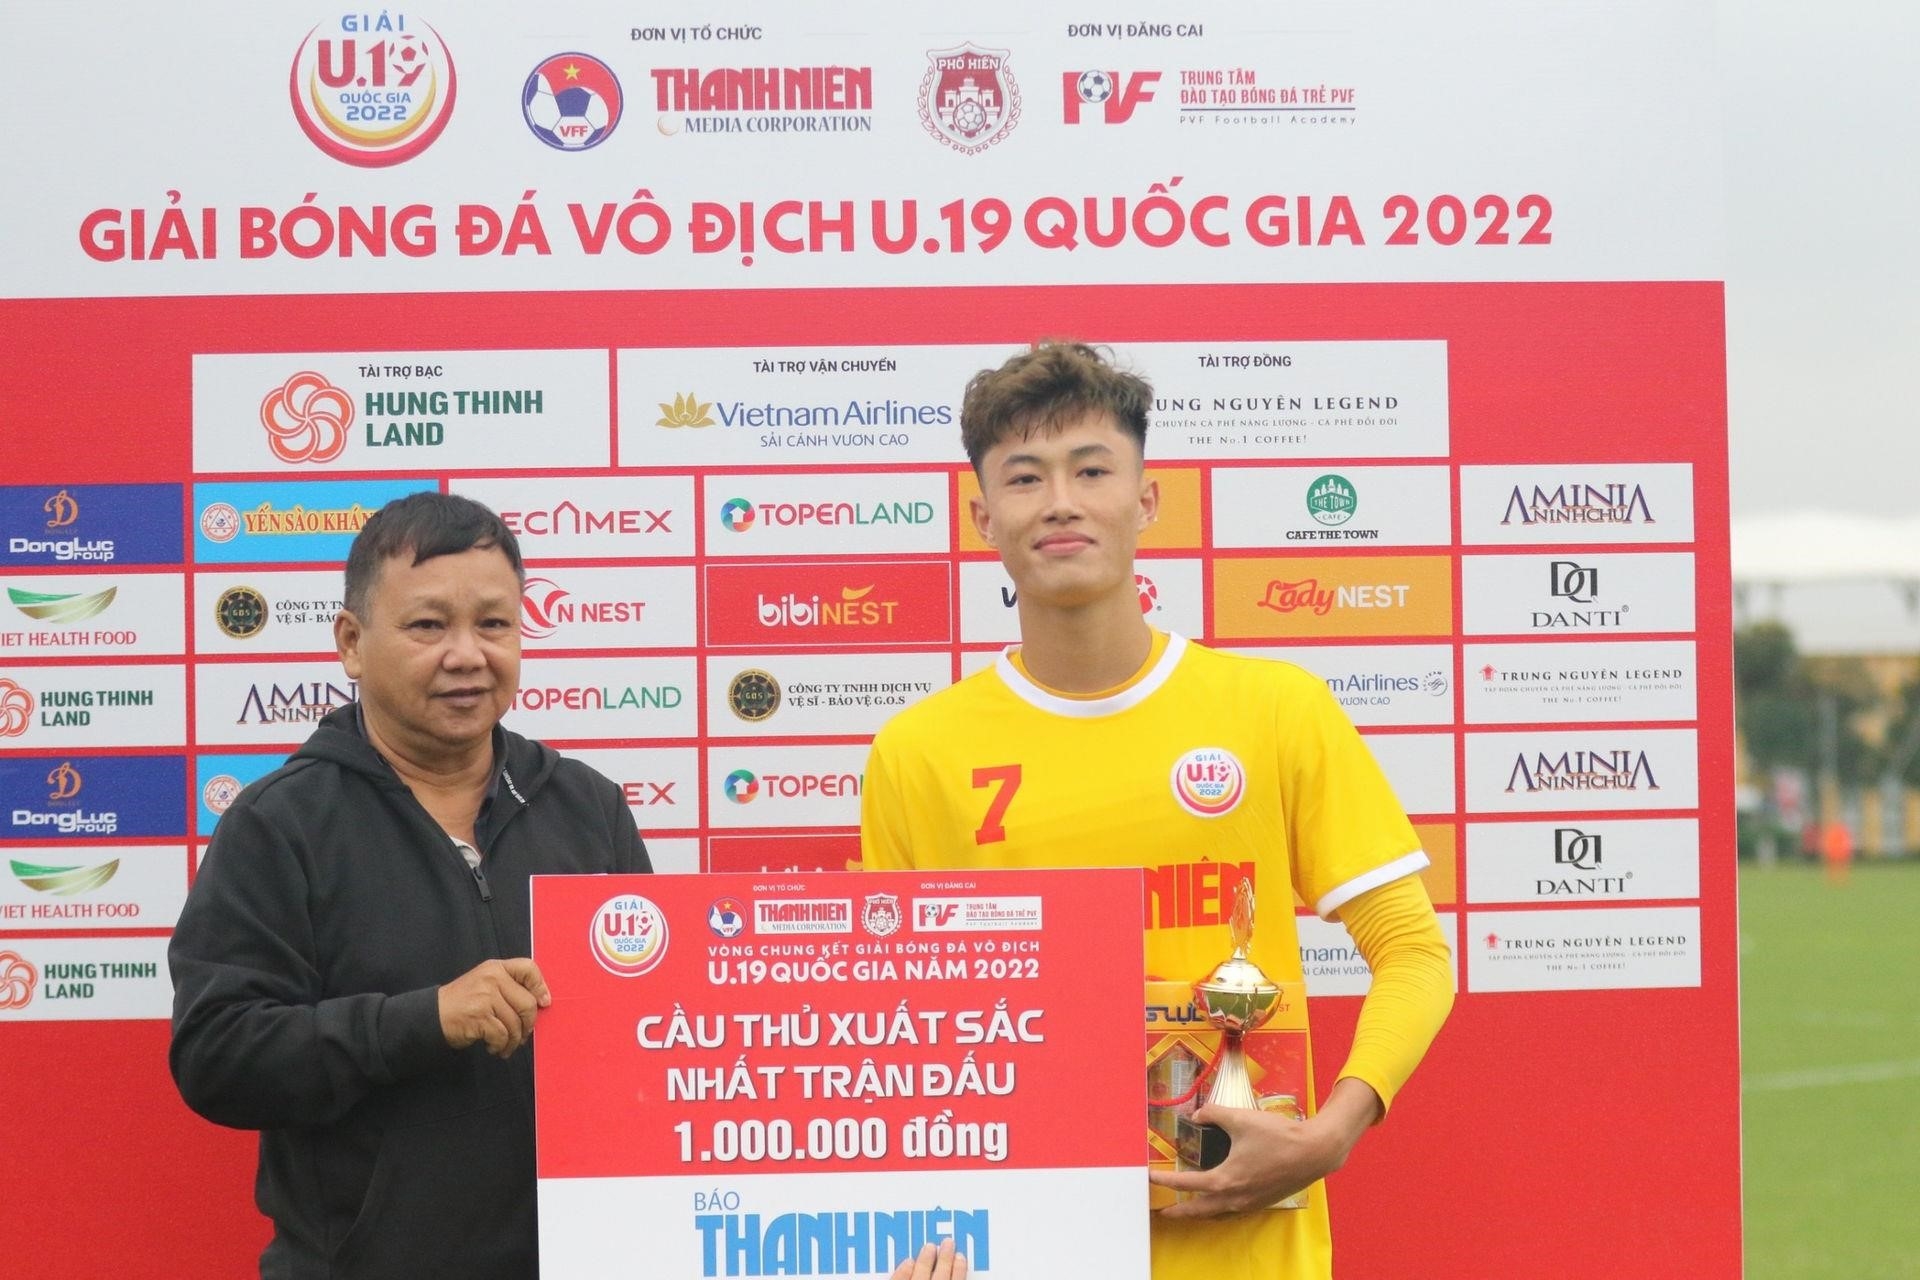 Nguyễn Văn Trường được trao giải cầu thủ ưu tú nhất trong trận đấu tại giải U19 Quốc gia 2022 - Ảnh: Thanh Niên.